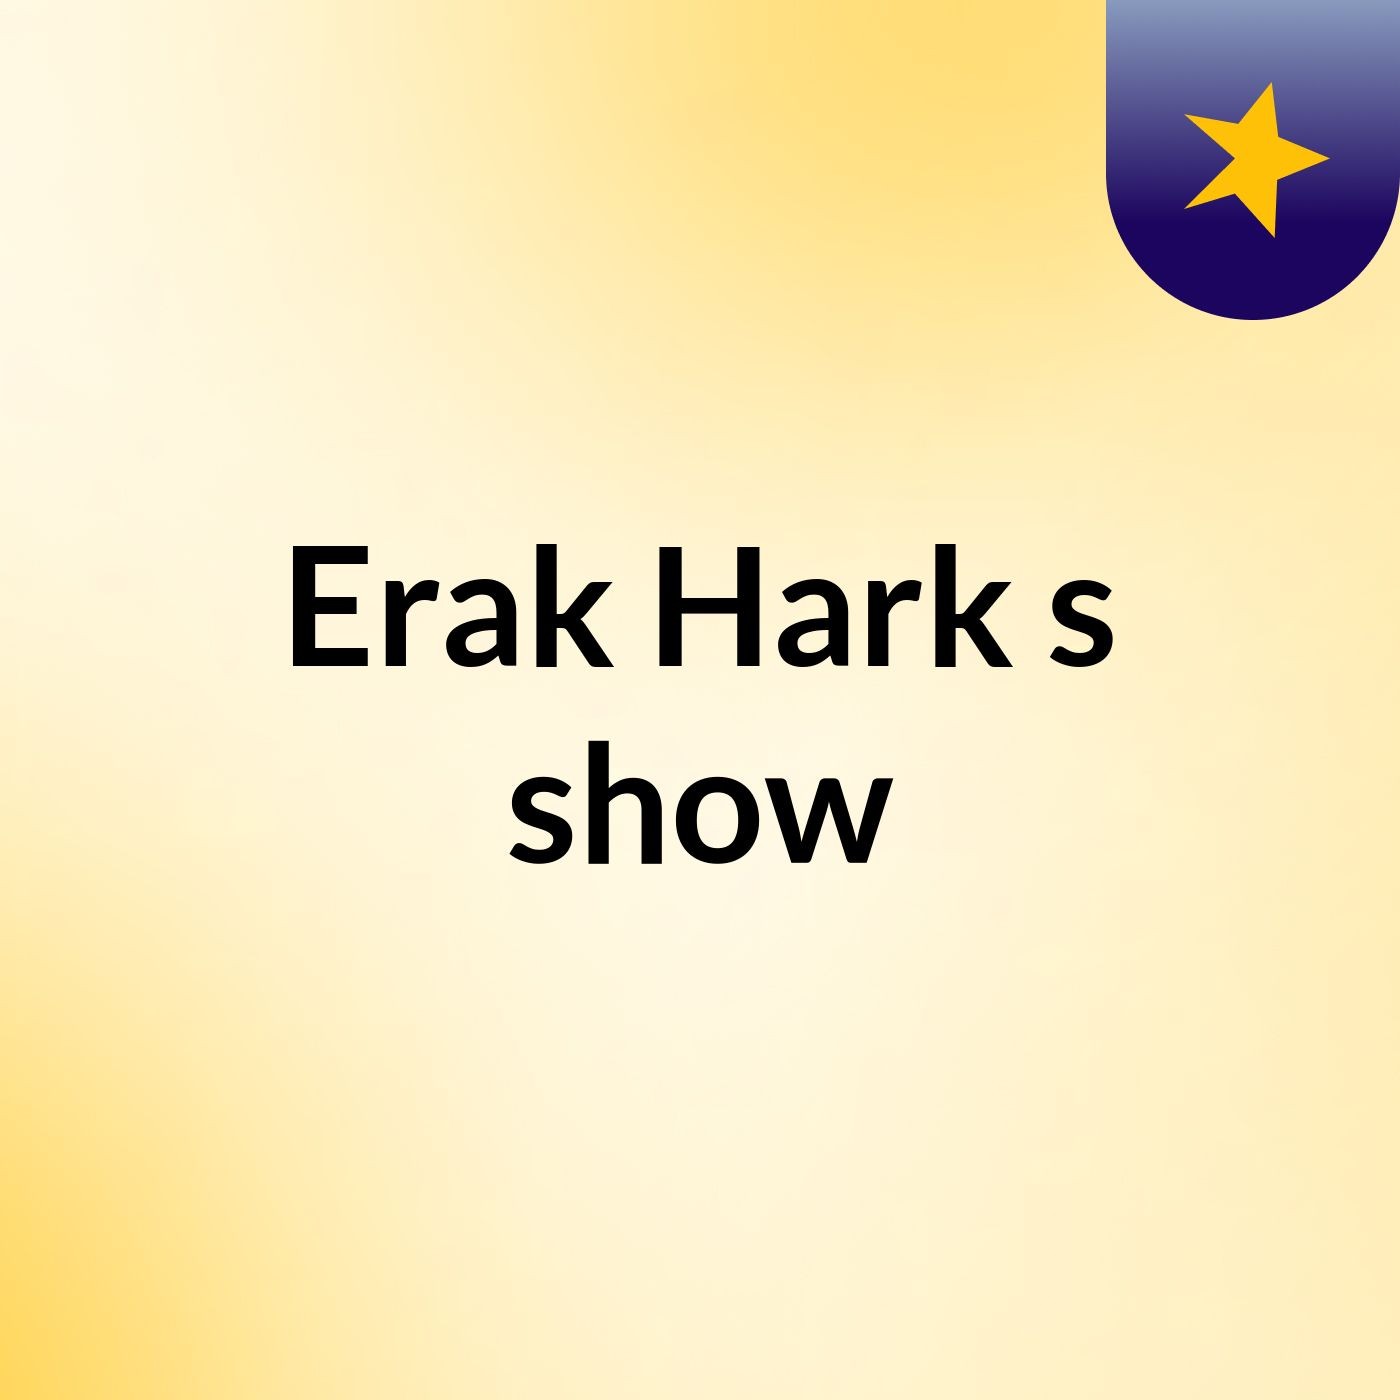 Erak Hark's show